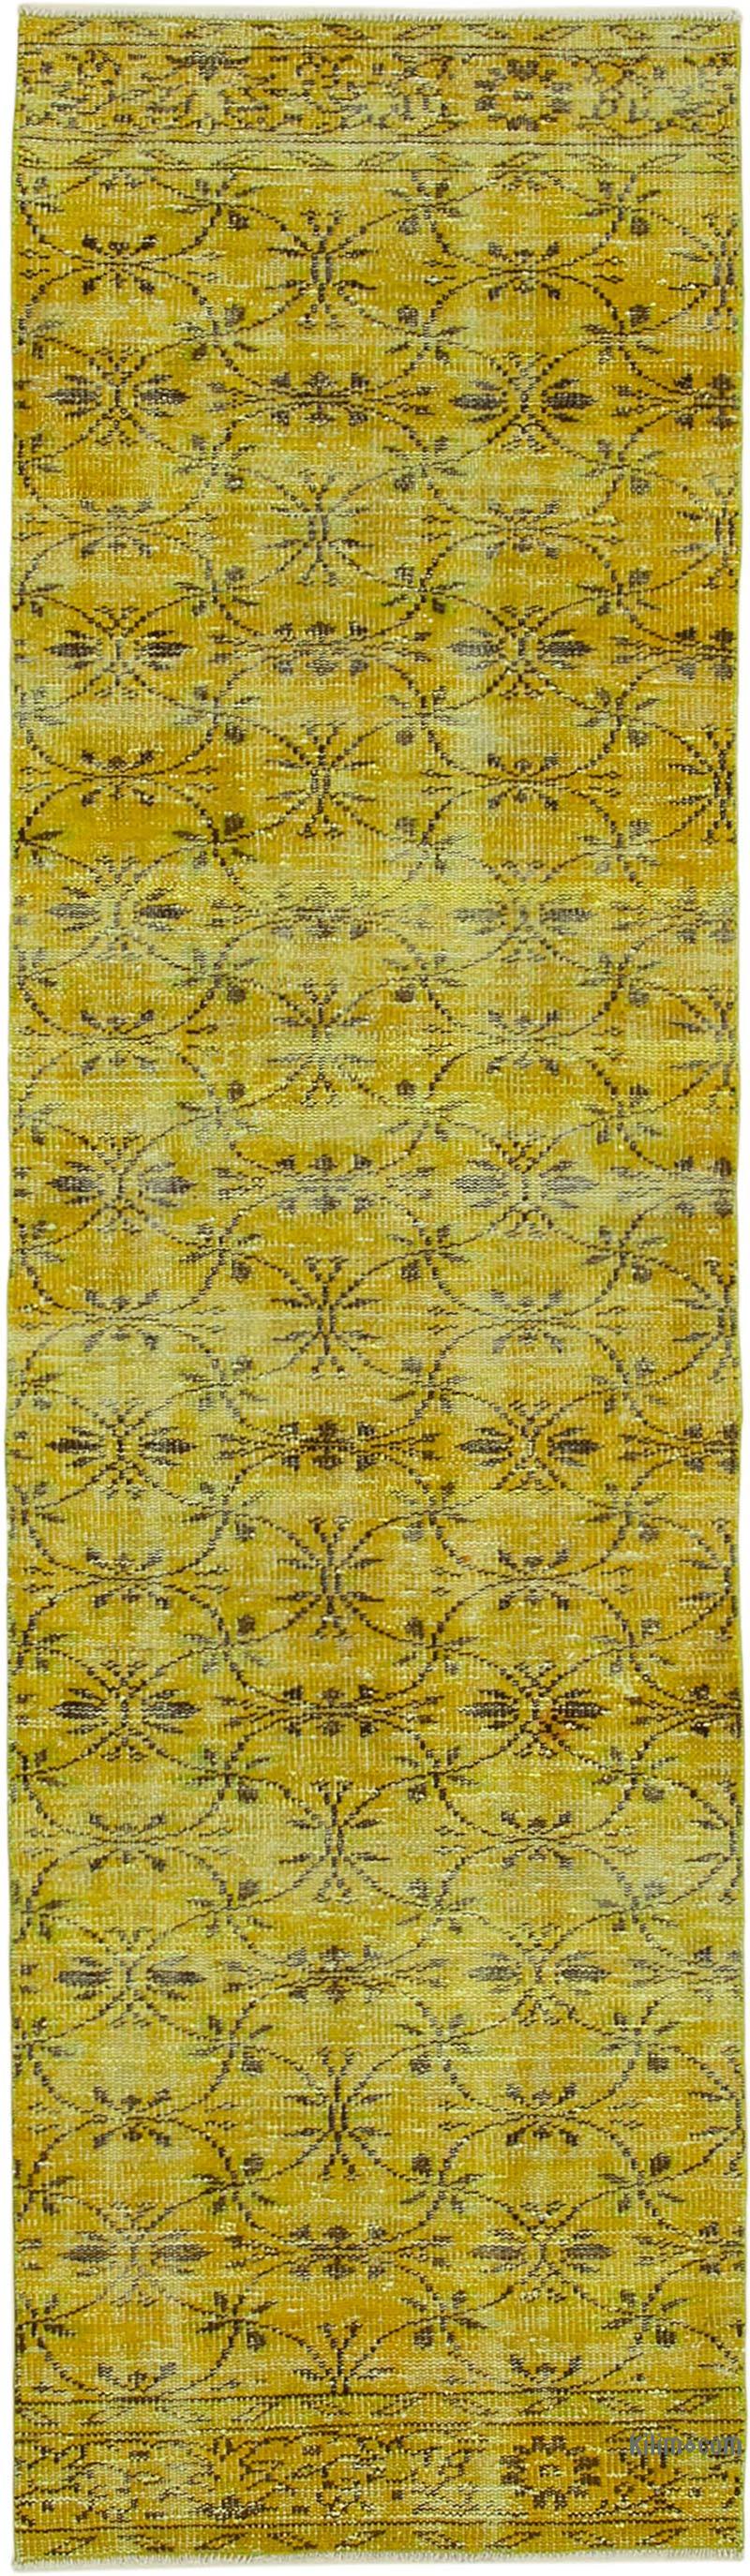 Sarı Boyalı El Dokuma Vintage Halı Yolluk - 81 cm x 284 cm - K0052139